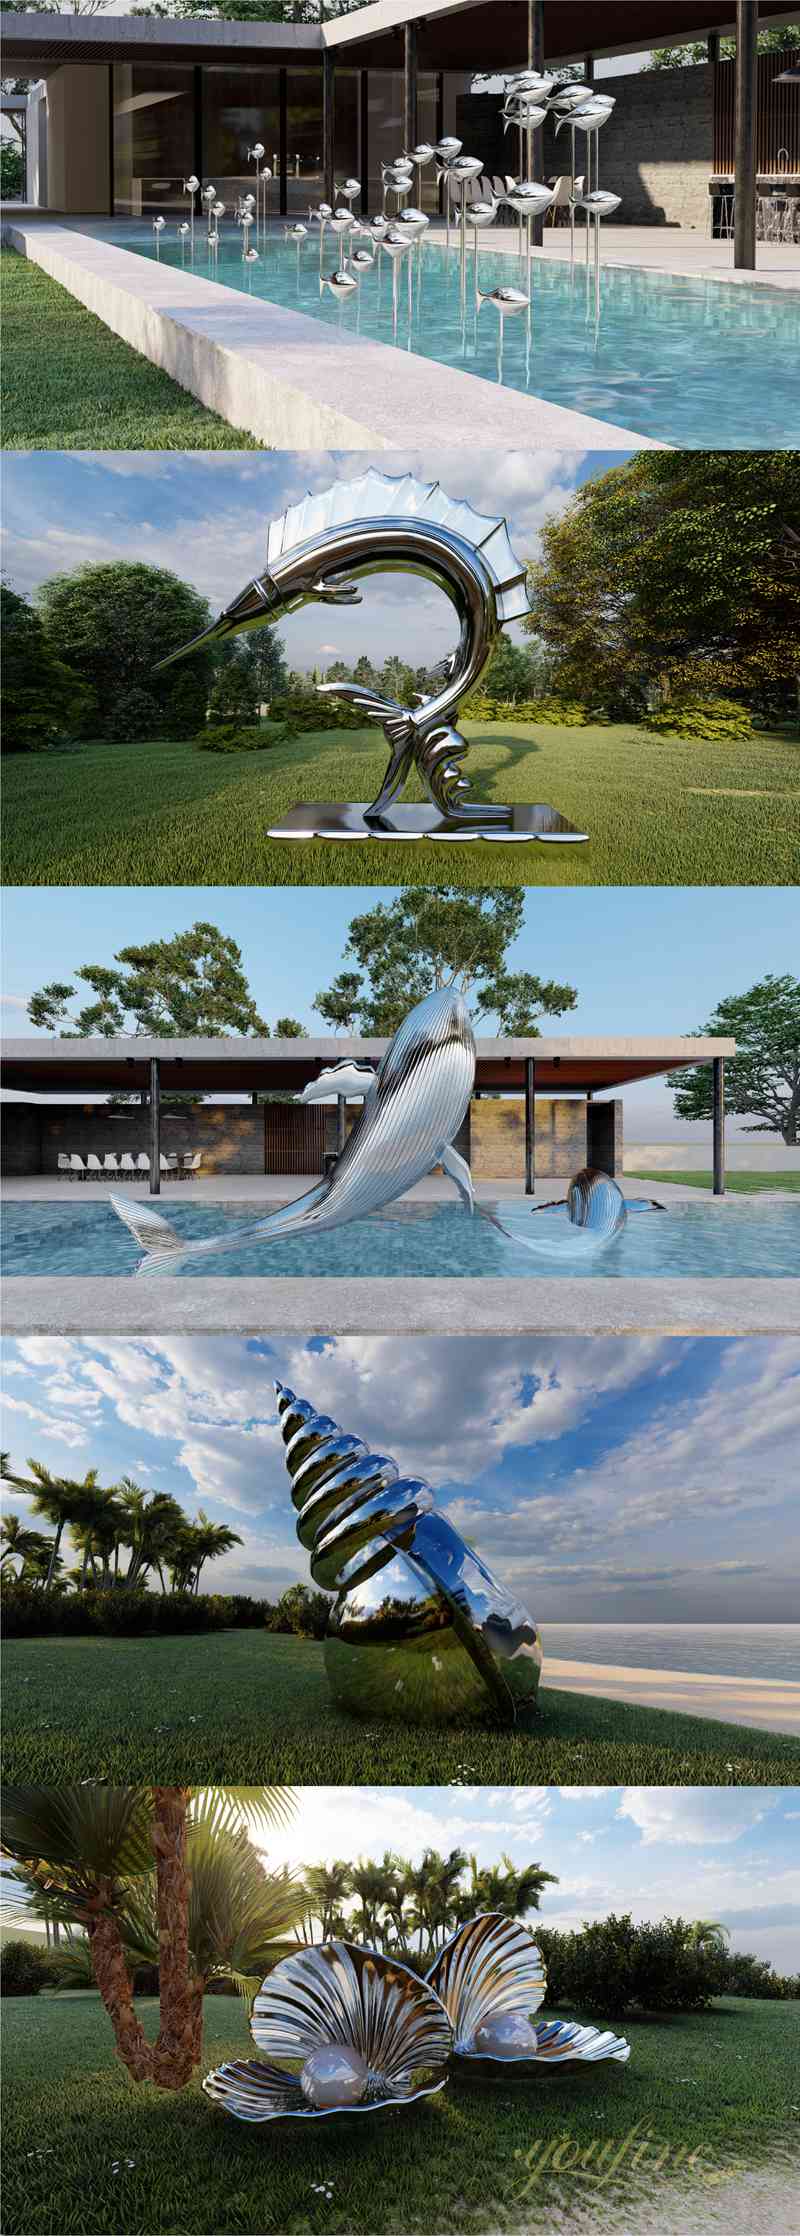 High Polished Metal Shark Sculpture Water Feature for Sale CSS-869 - Garden Metal Sculpture - 4